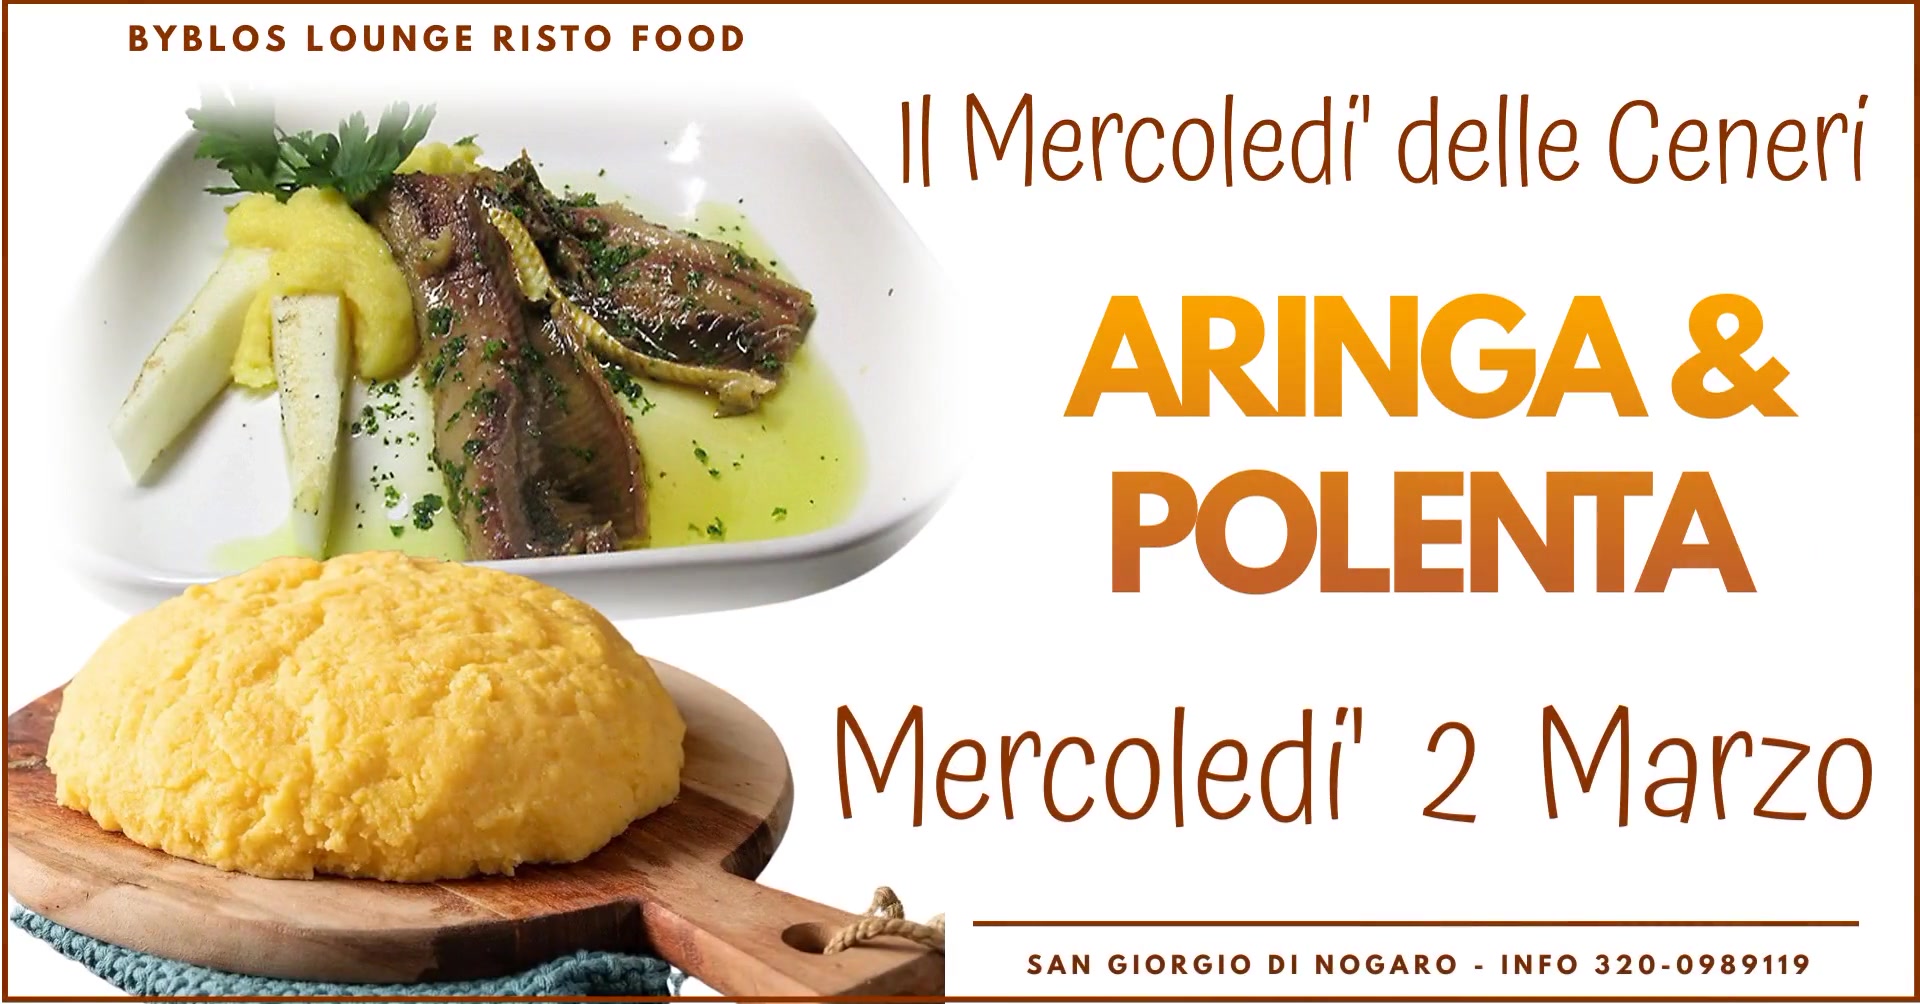 "ARINGA & POLENTA" Il 2 Marzo Mercoledi' delle Ceneri ,Degustazione Free ,San Giorgio di Nogaro